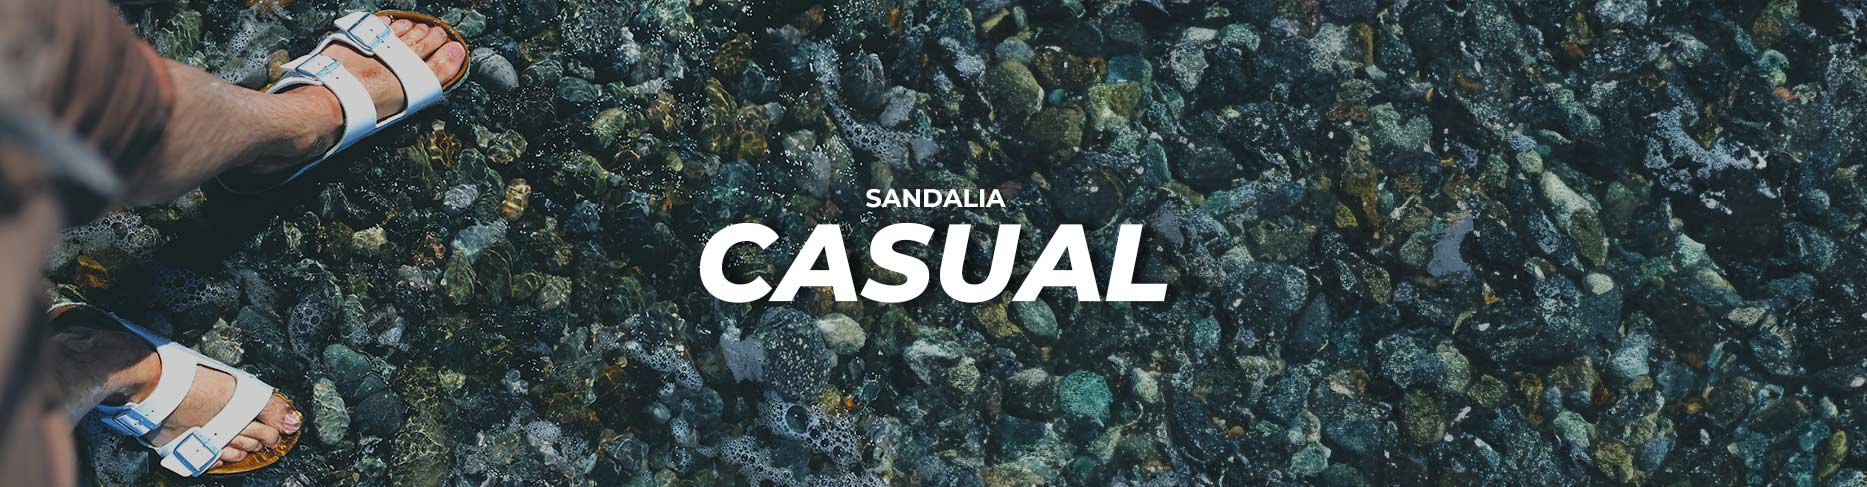 SANDALIA CASUAL CABALLERO